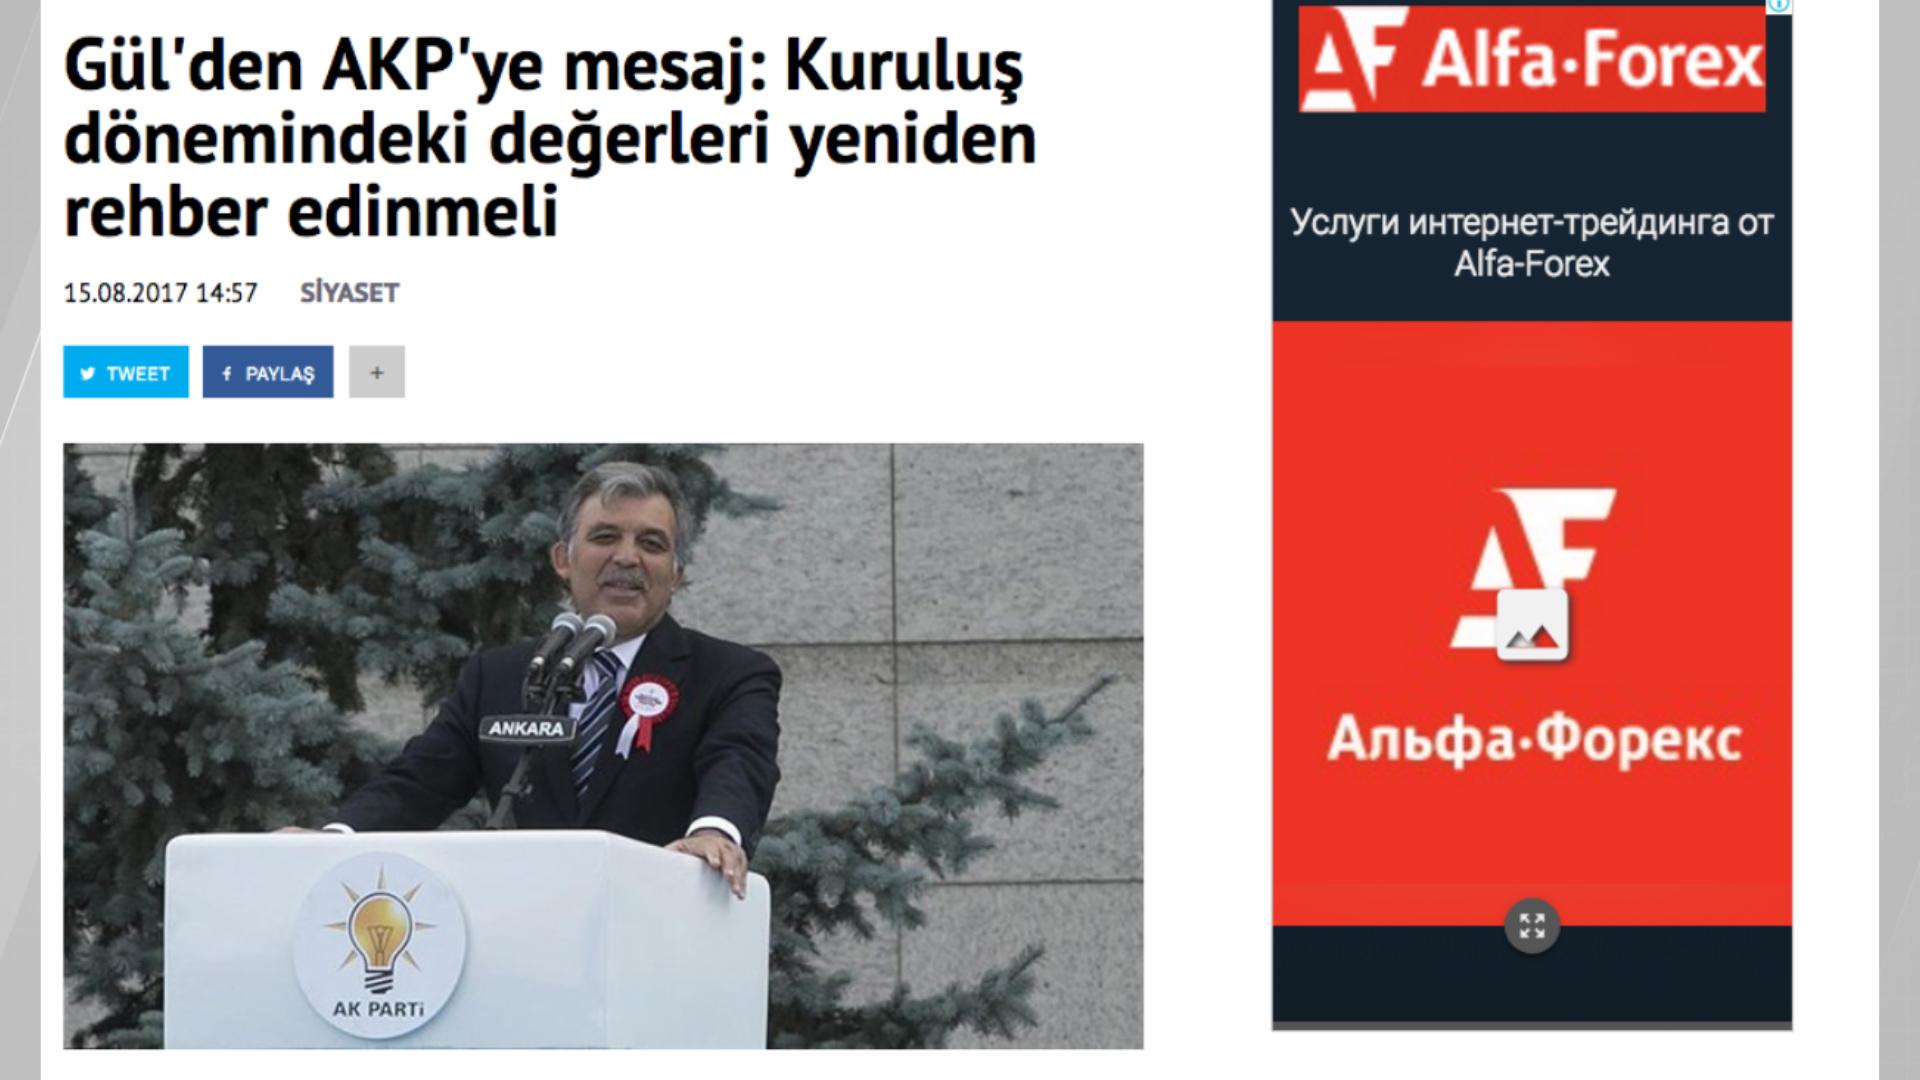 Աբդուլլահ Գյուլը՝ նորից թուրքական մամուլի առաջին էջերին